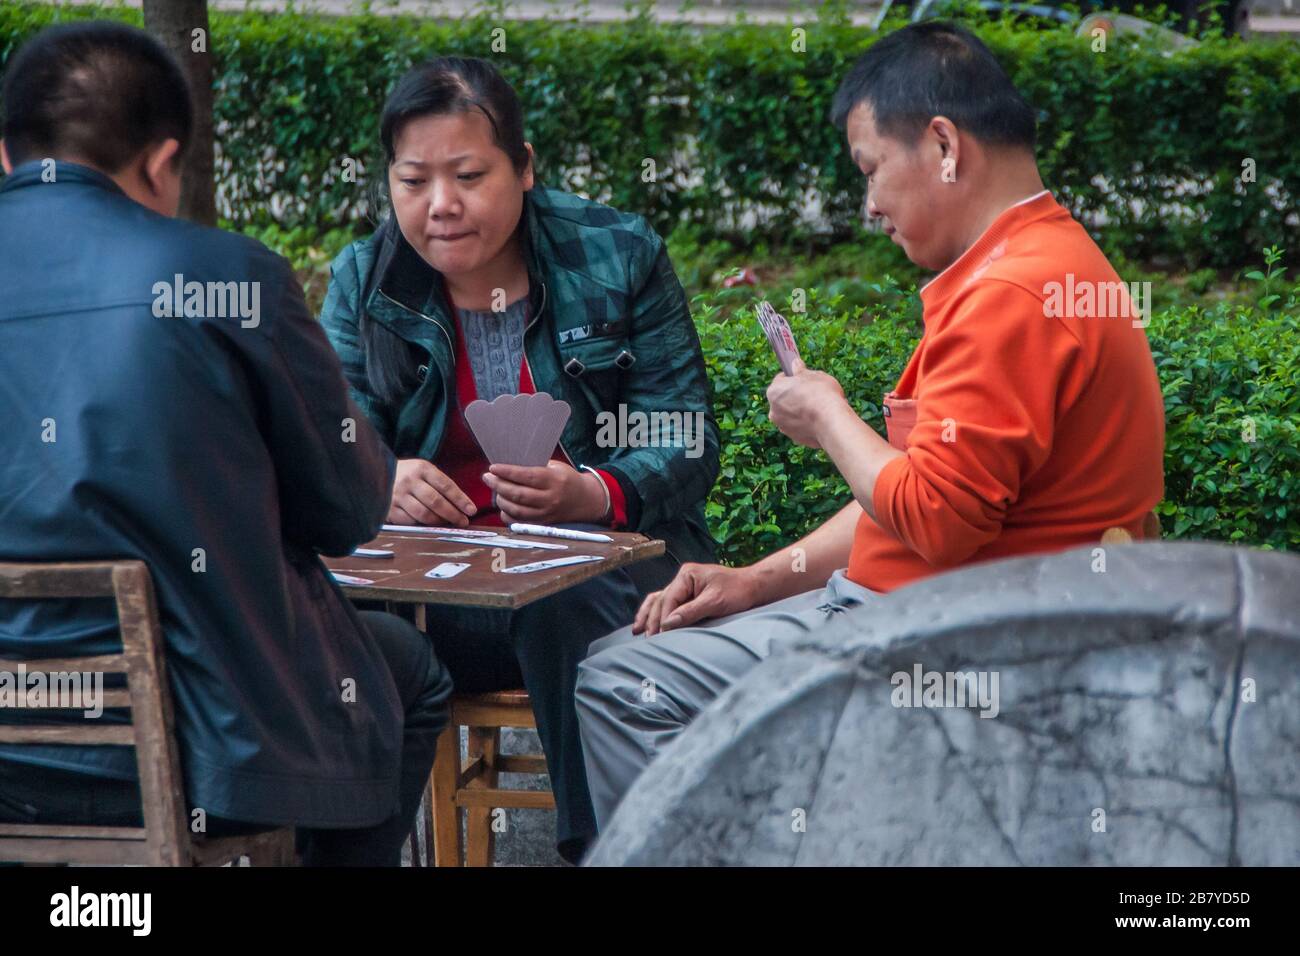 Guilin, China - 11. Mai 2010: Stadtzentrum. Auf Stühlen und Bank spielen Frau und 2 Männer chinesische Karten mit großem Fokus und Aufmerksamkeit. Grünes Laub im Rücken. Stockfoto